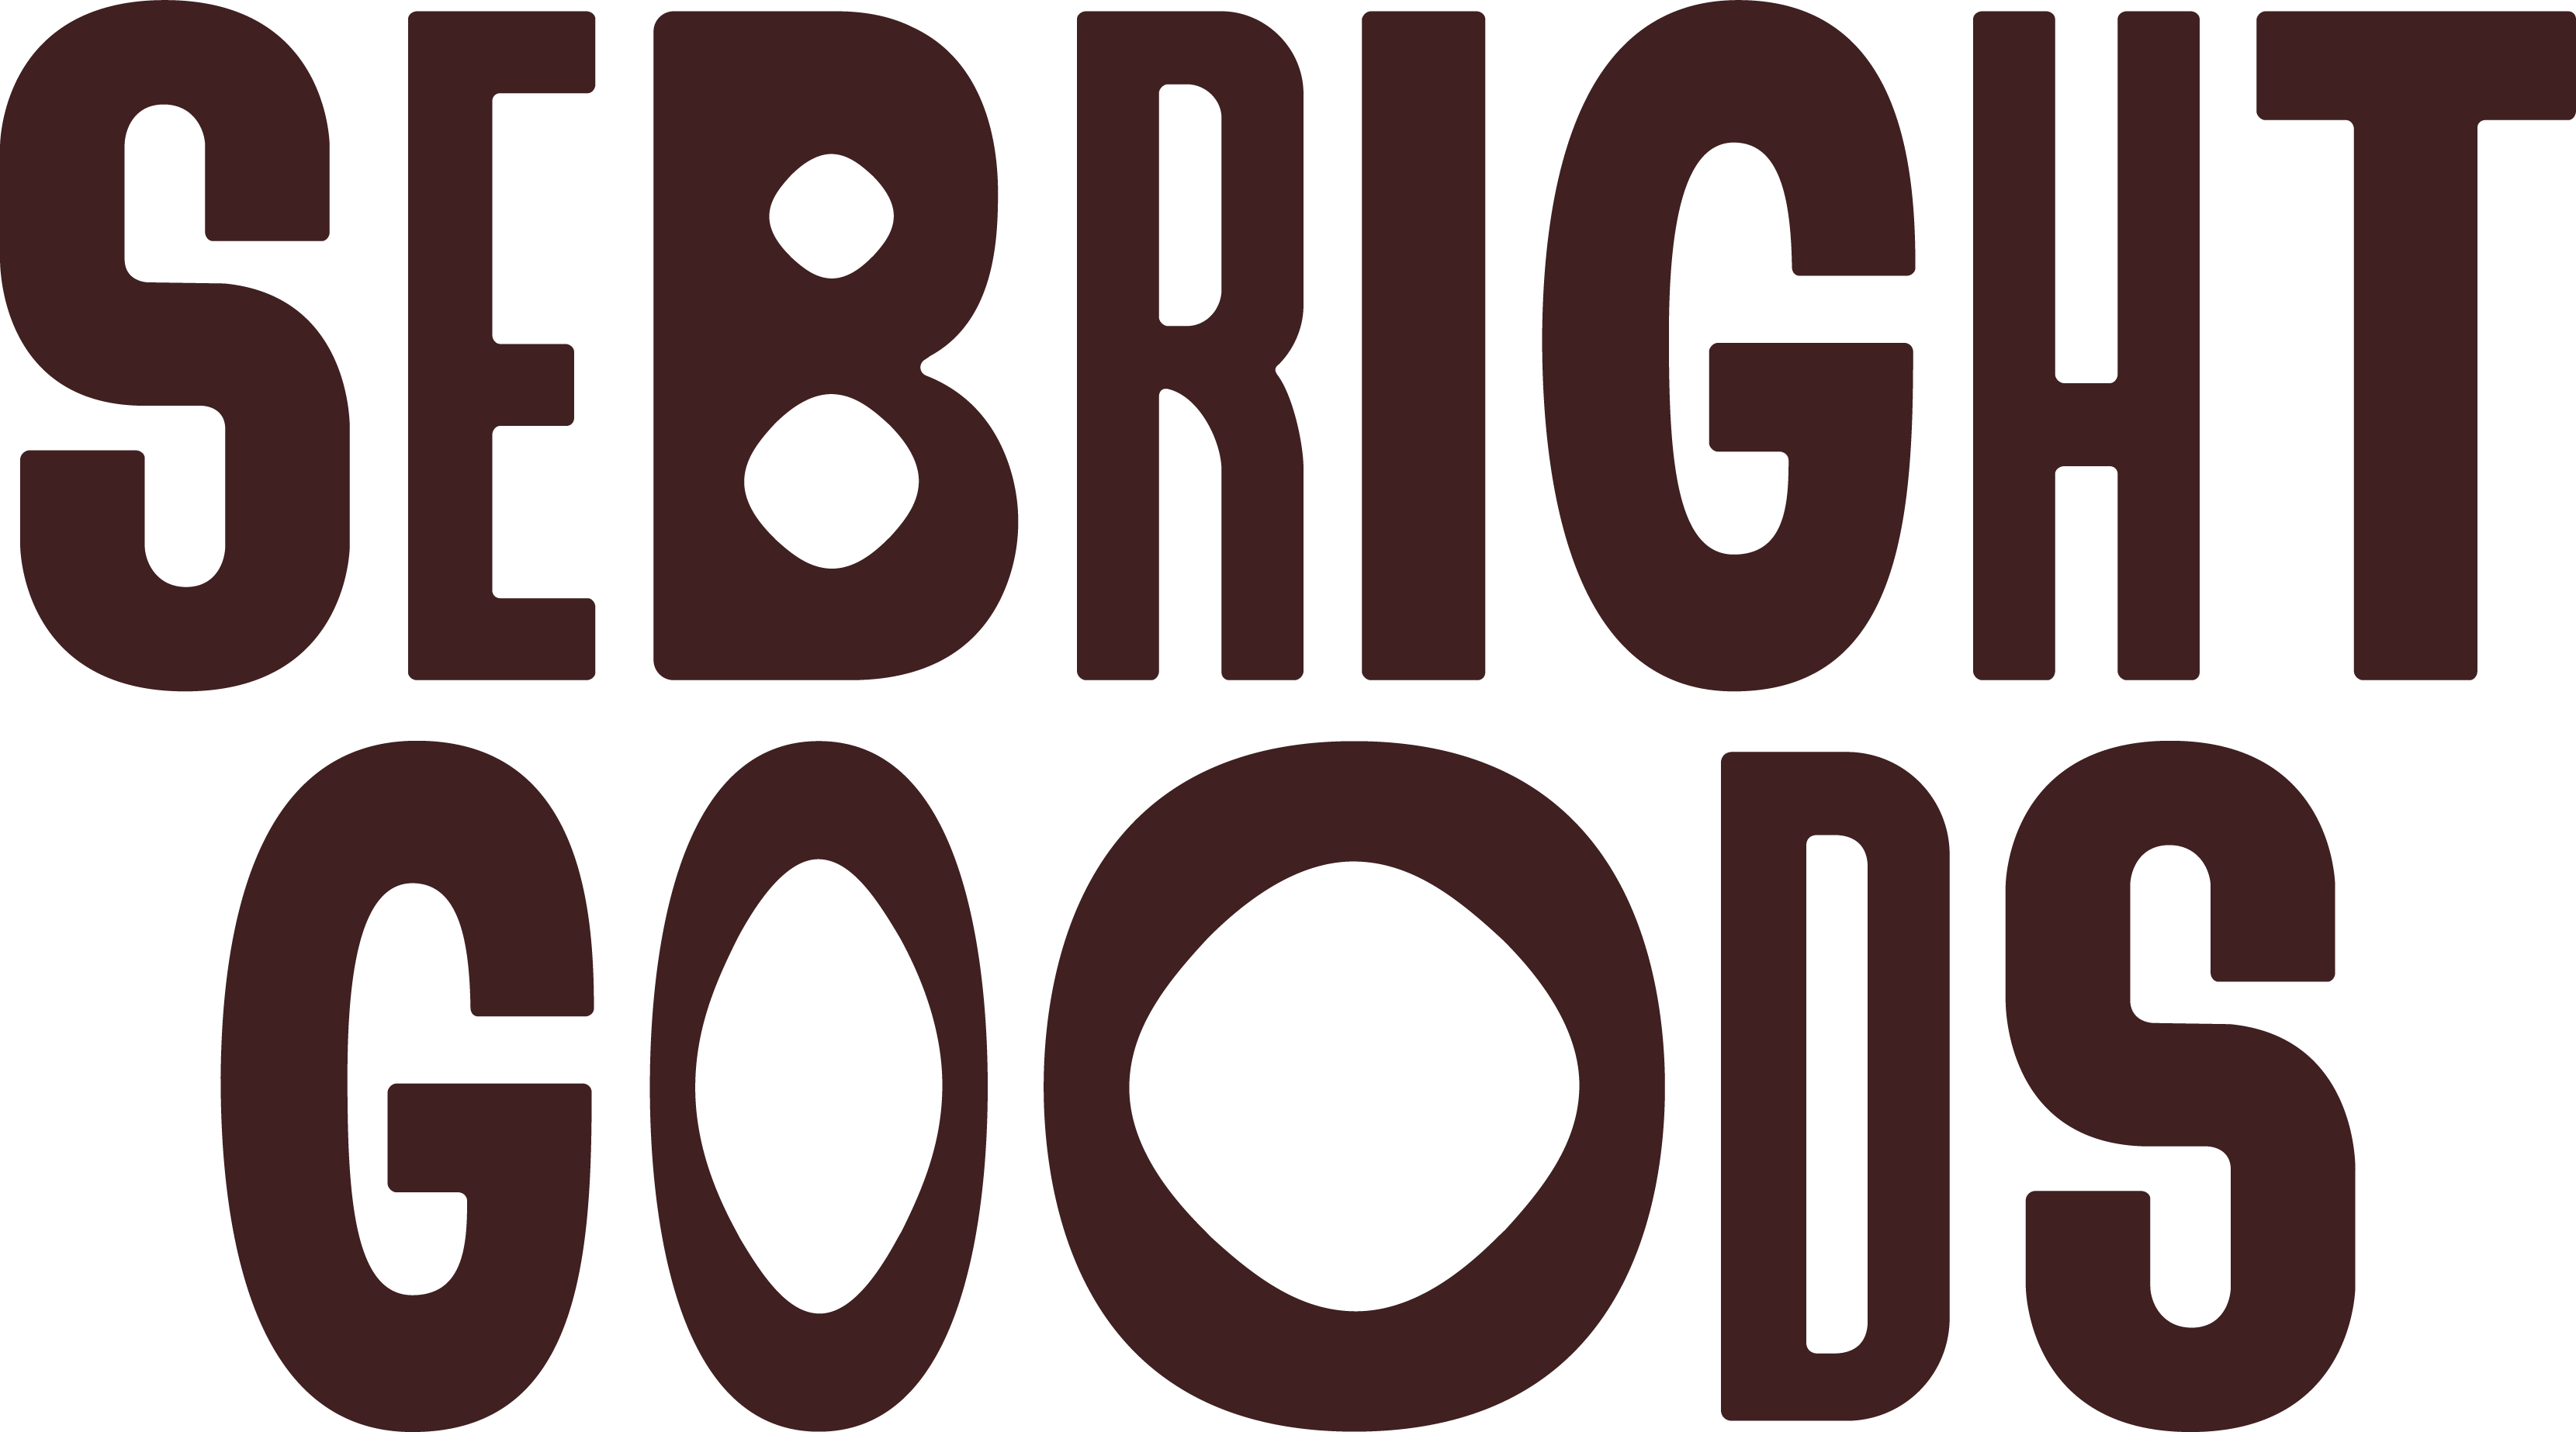 Sebright Goods